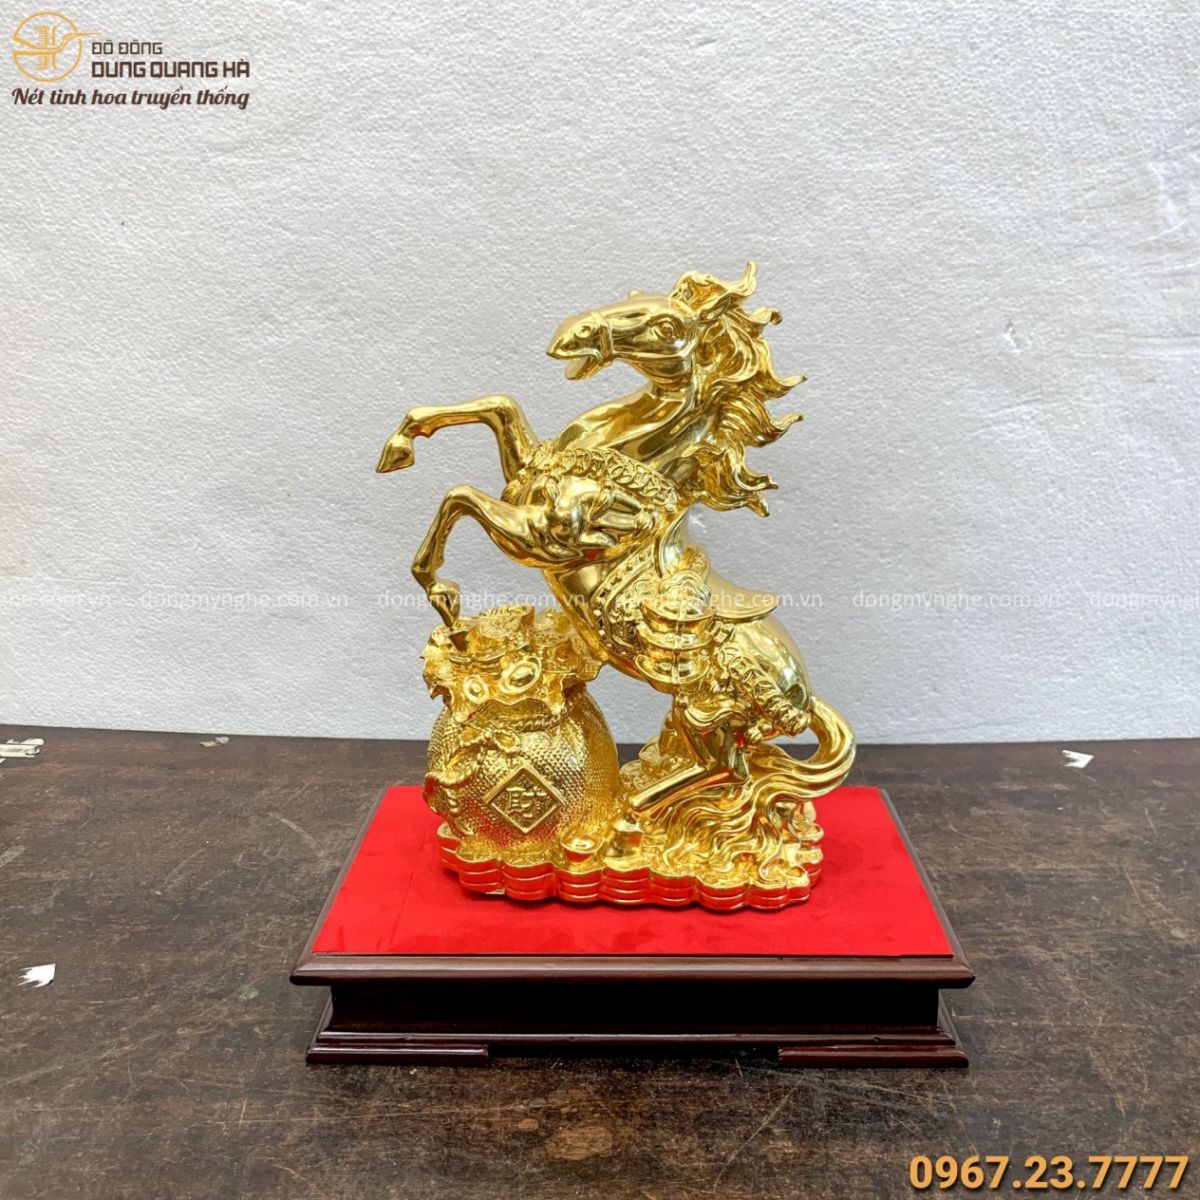 Tượng Ngựa hí phong thủy tài lộc bằng đồng mạ vàng 24k